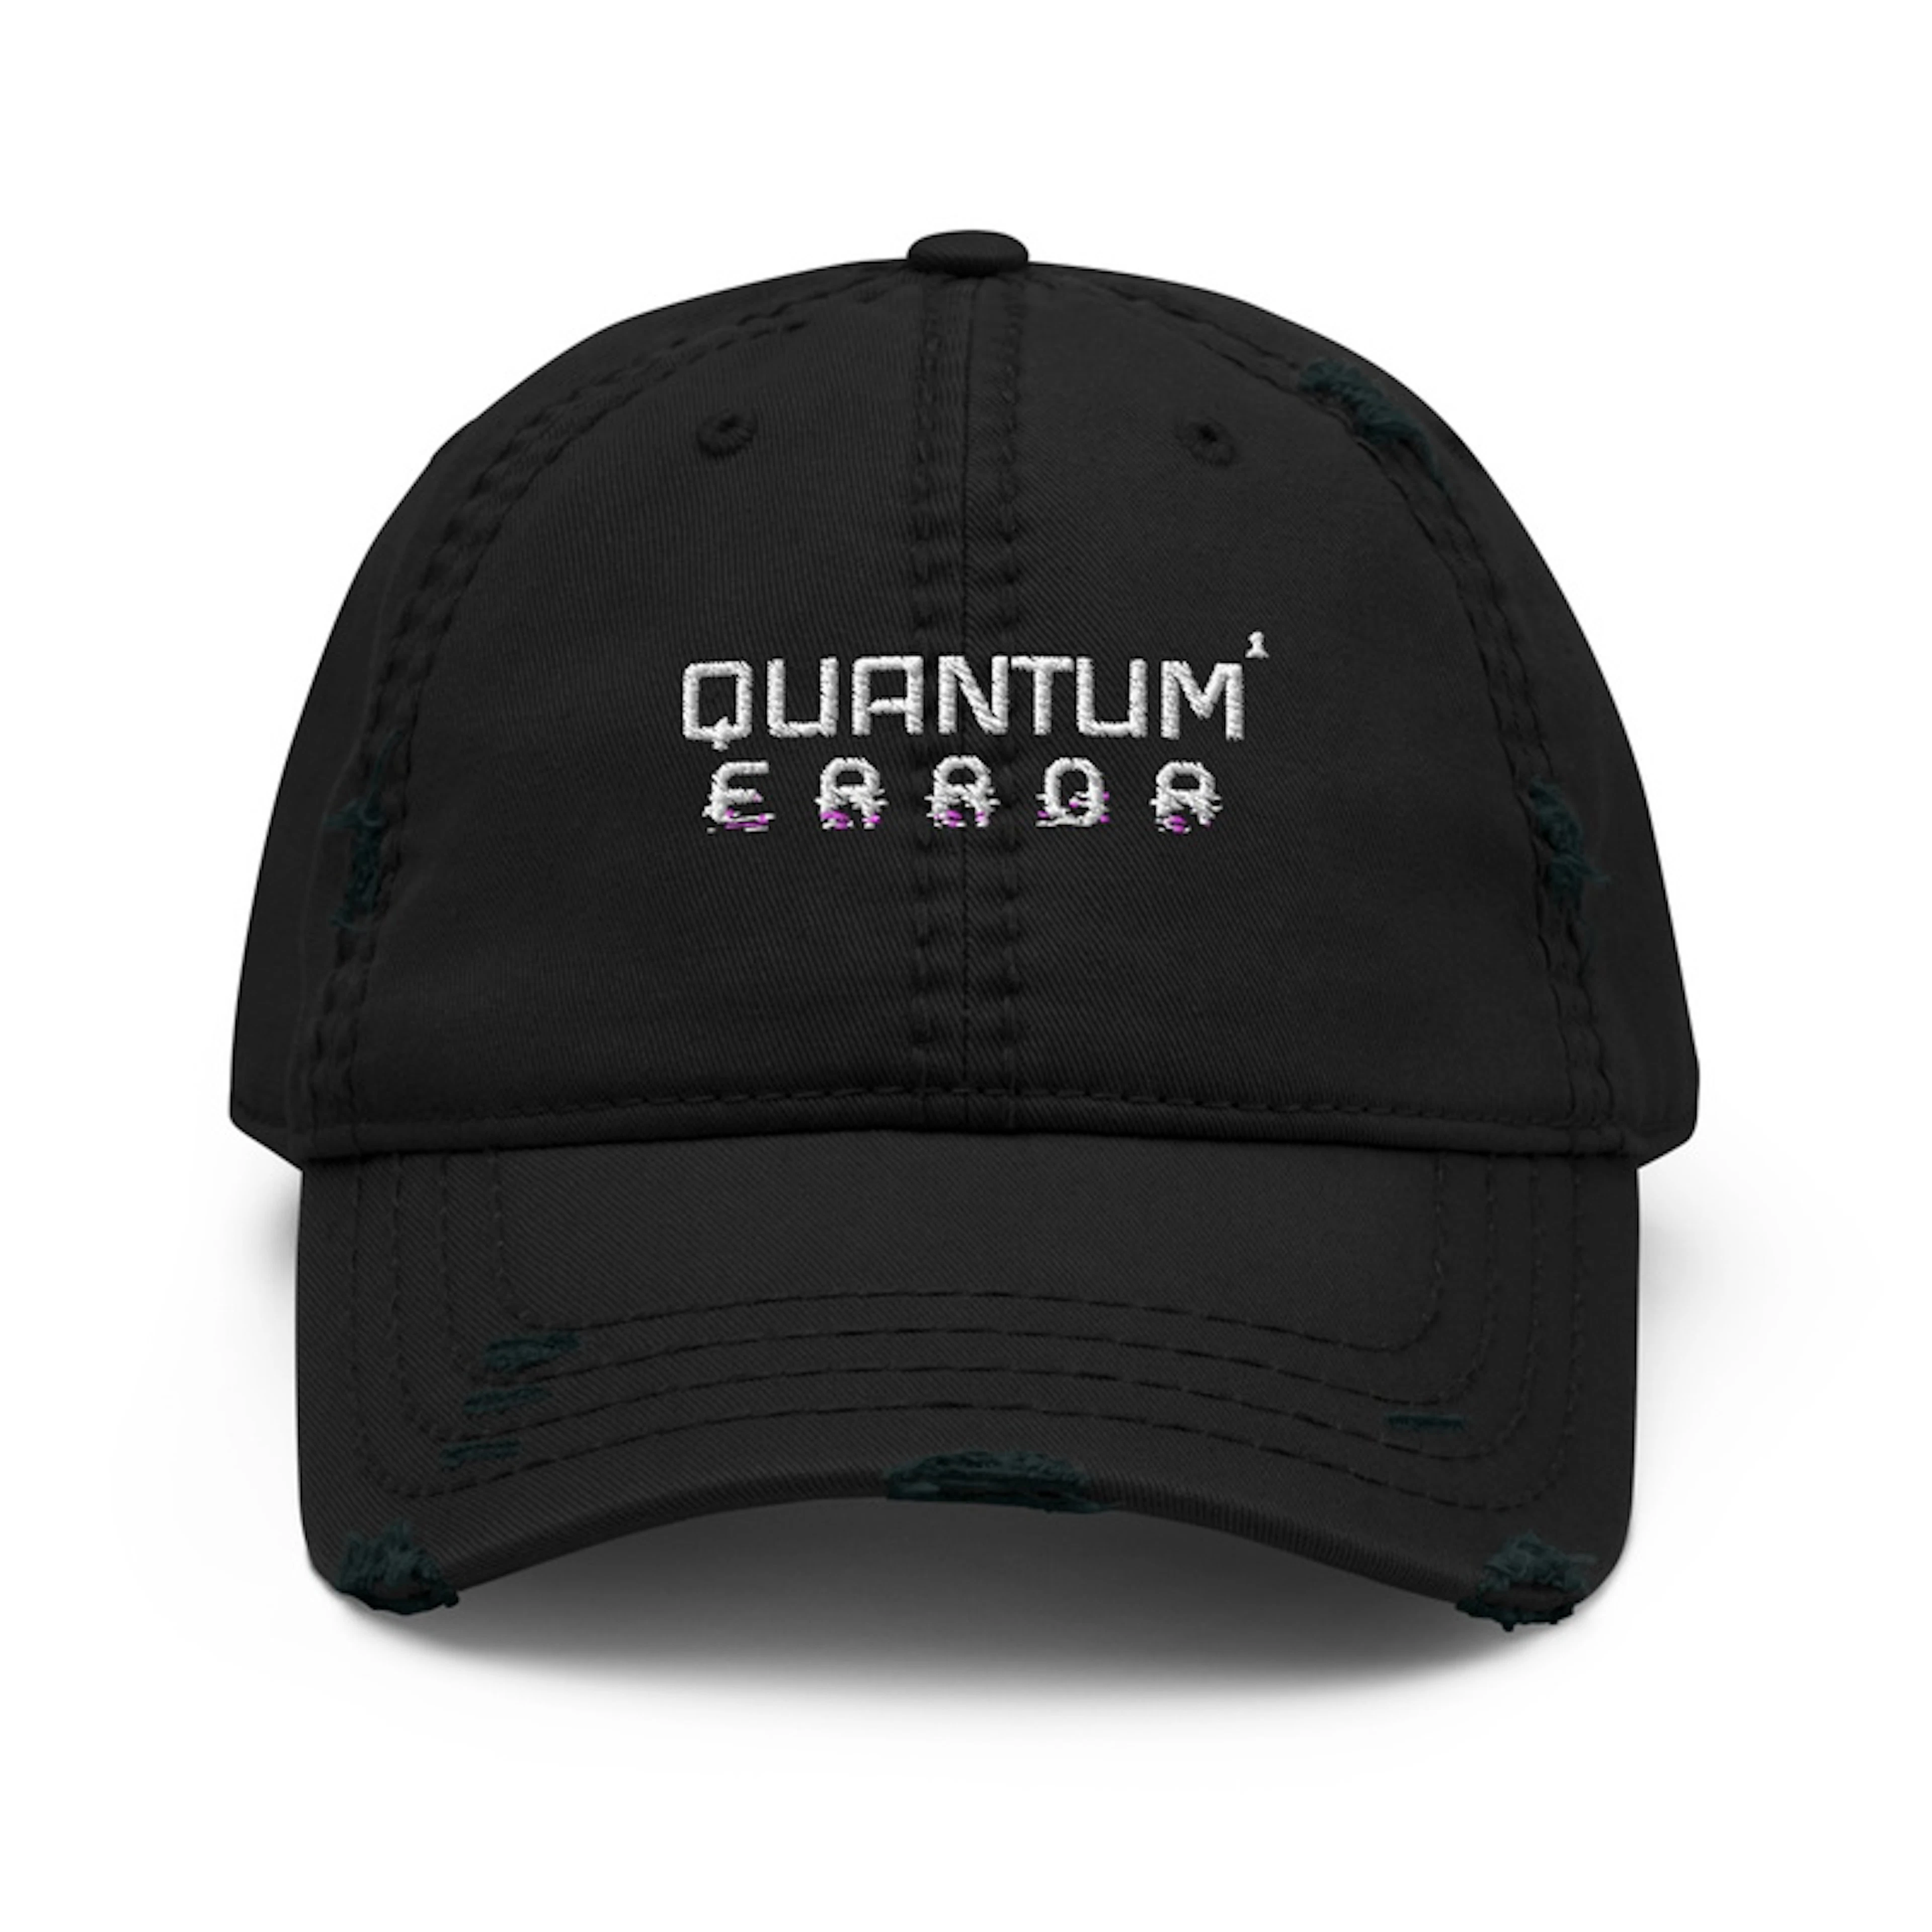 QUANTUM ERROR | Standard Hat